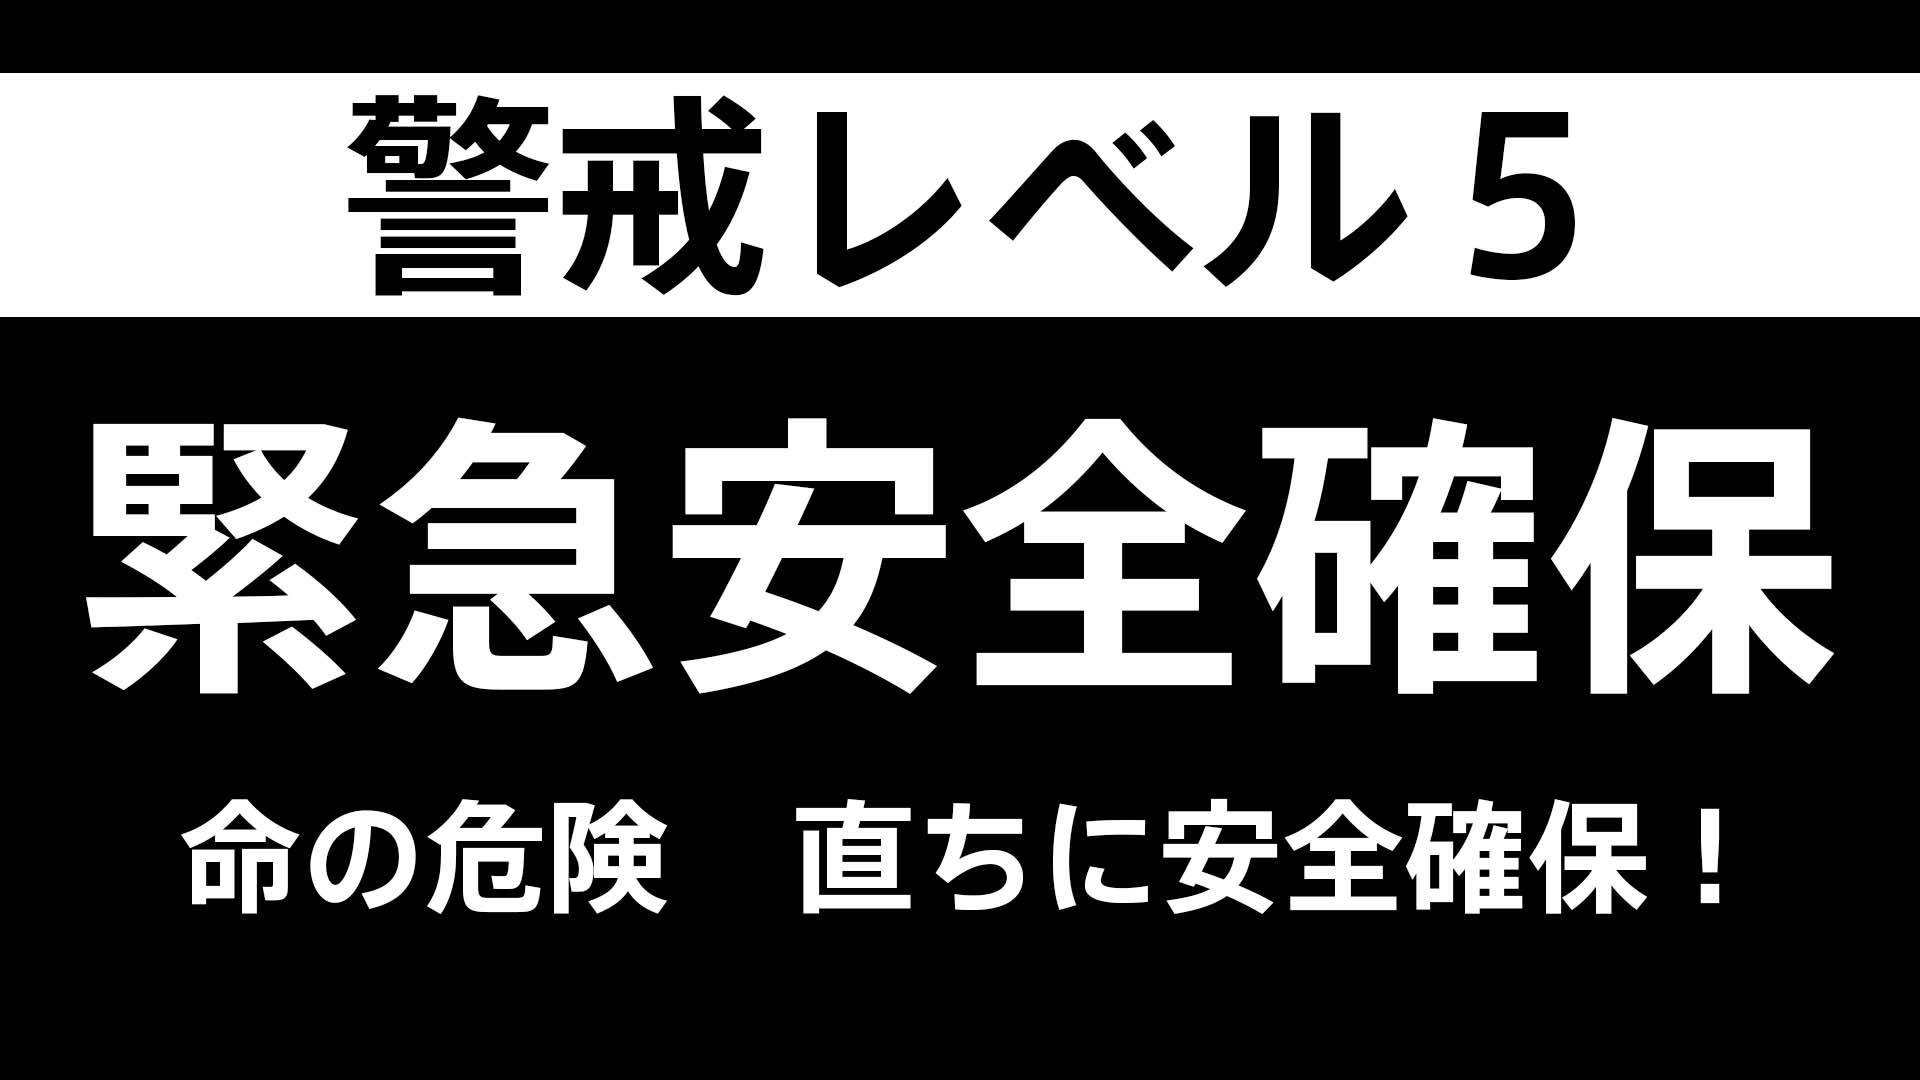 【速報】宮城県大崎市の一部に緊急安全確保【レベル5】発表